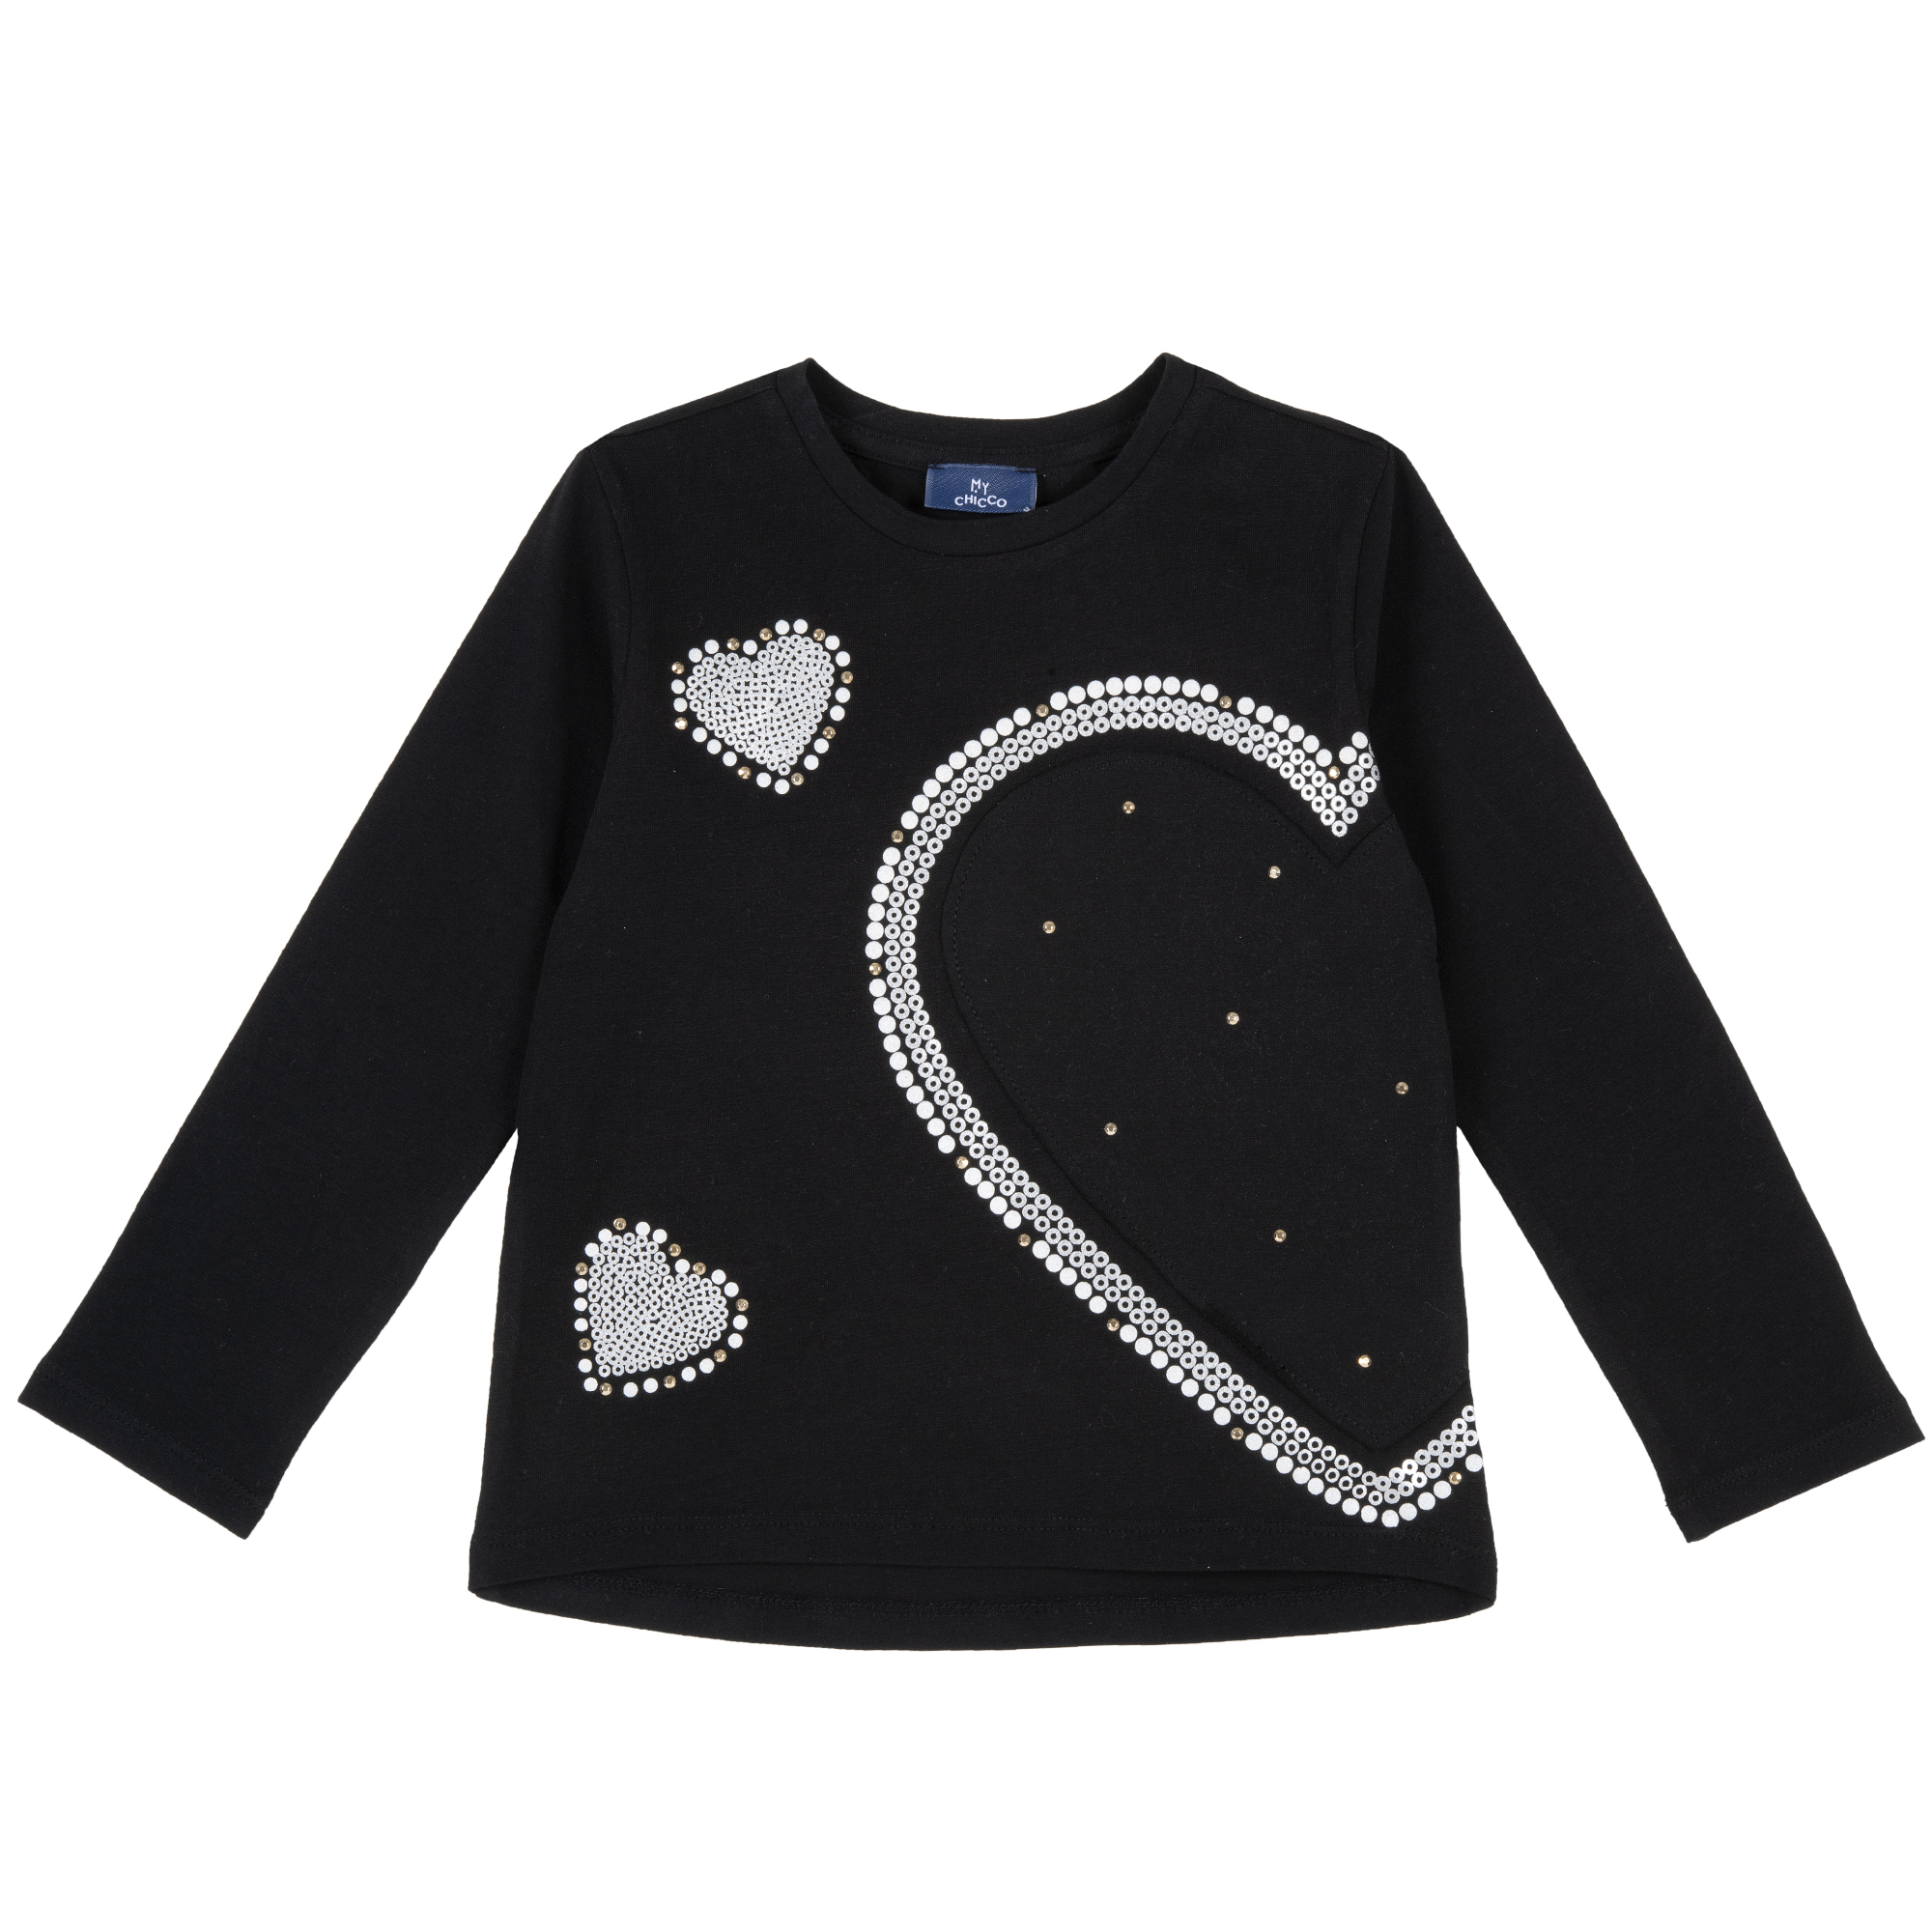 Bluza copii Chicco, negru cu elemente decorative, 06336 06336